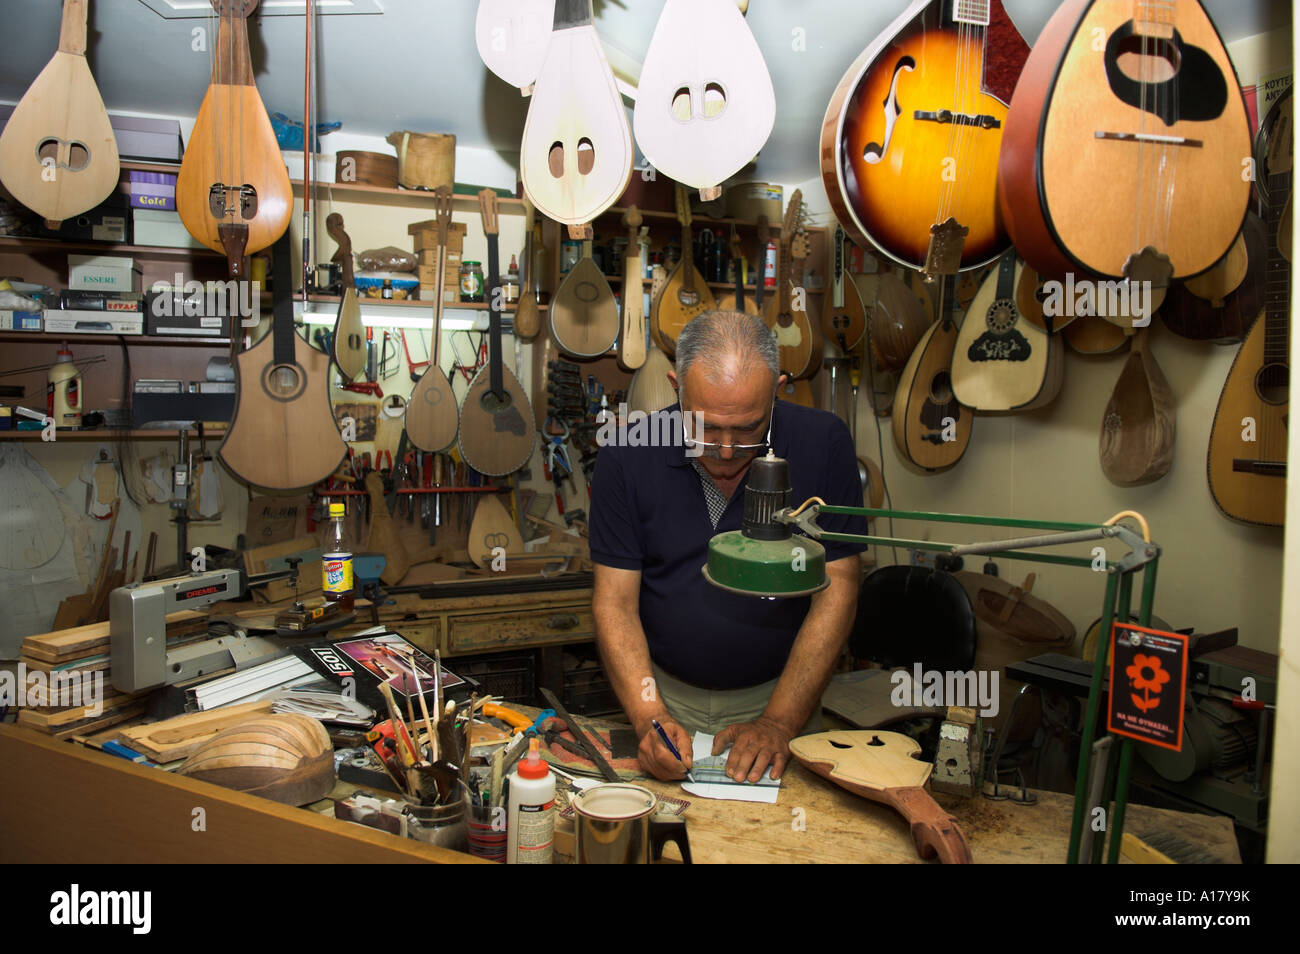 Zeichenfolge, die Instrumentenbauer Handwerker E Katsantonis in Werkstatt Rethymnon Kreta Griechenland Stockfoto